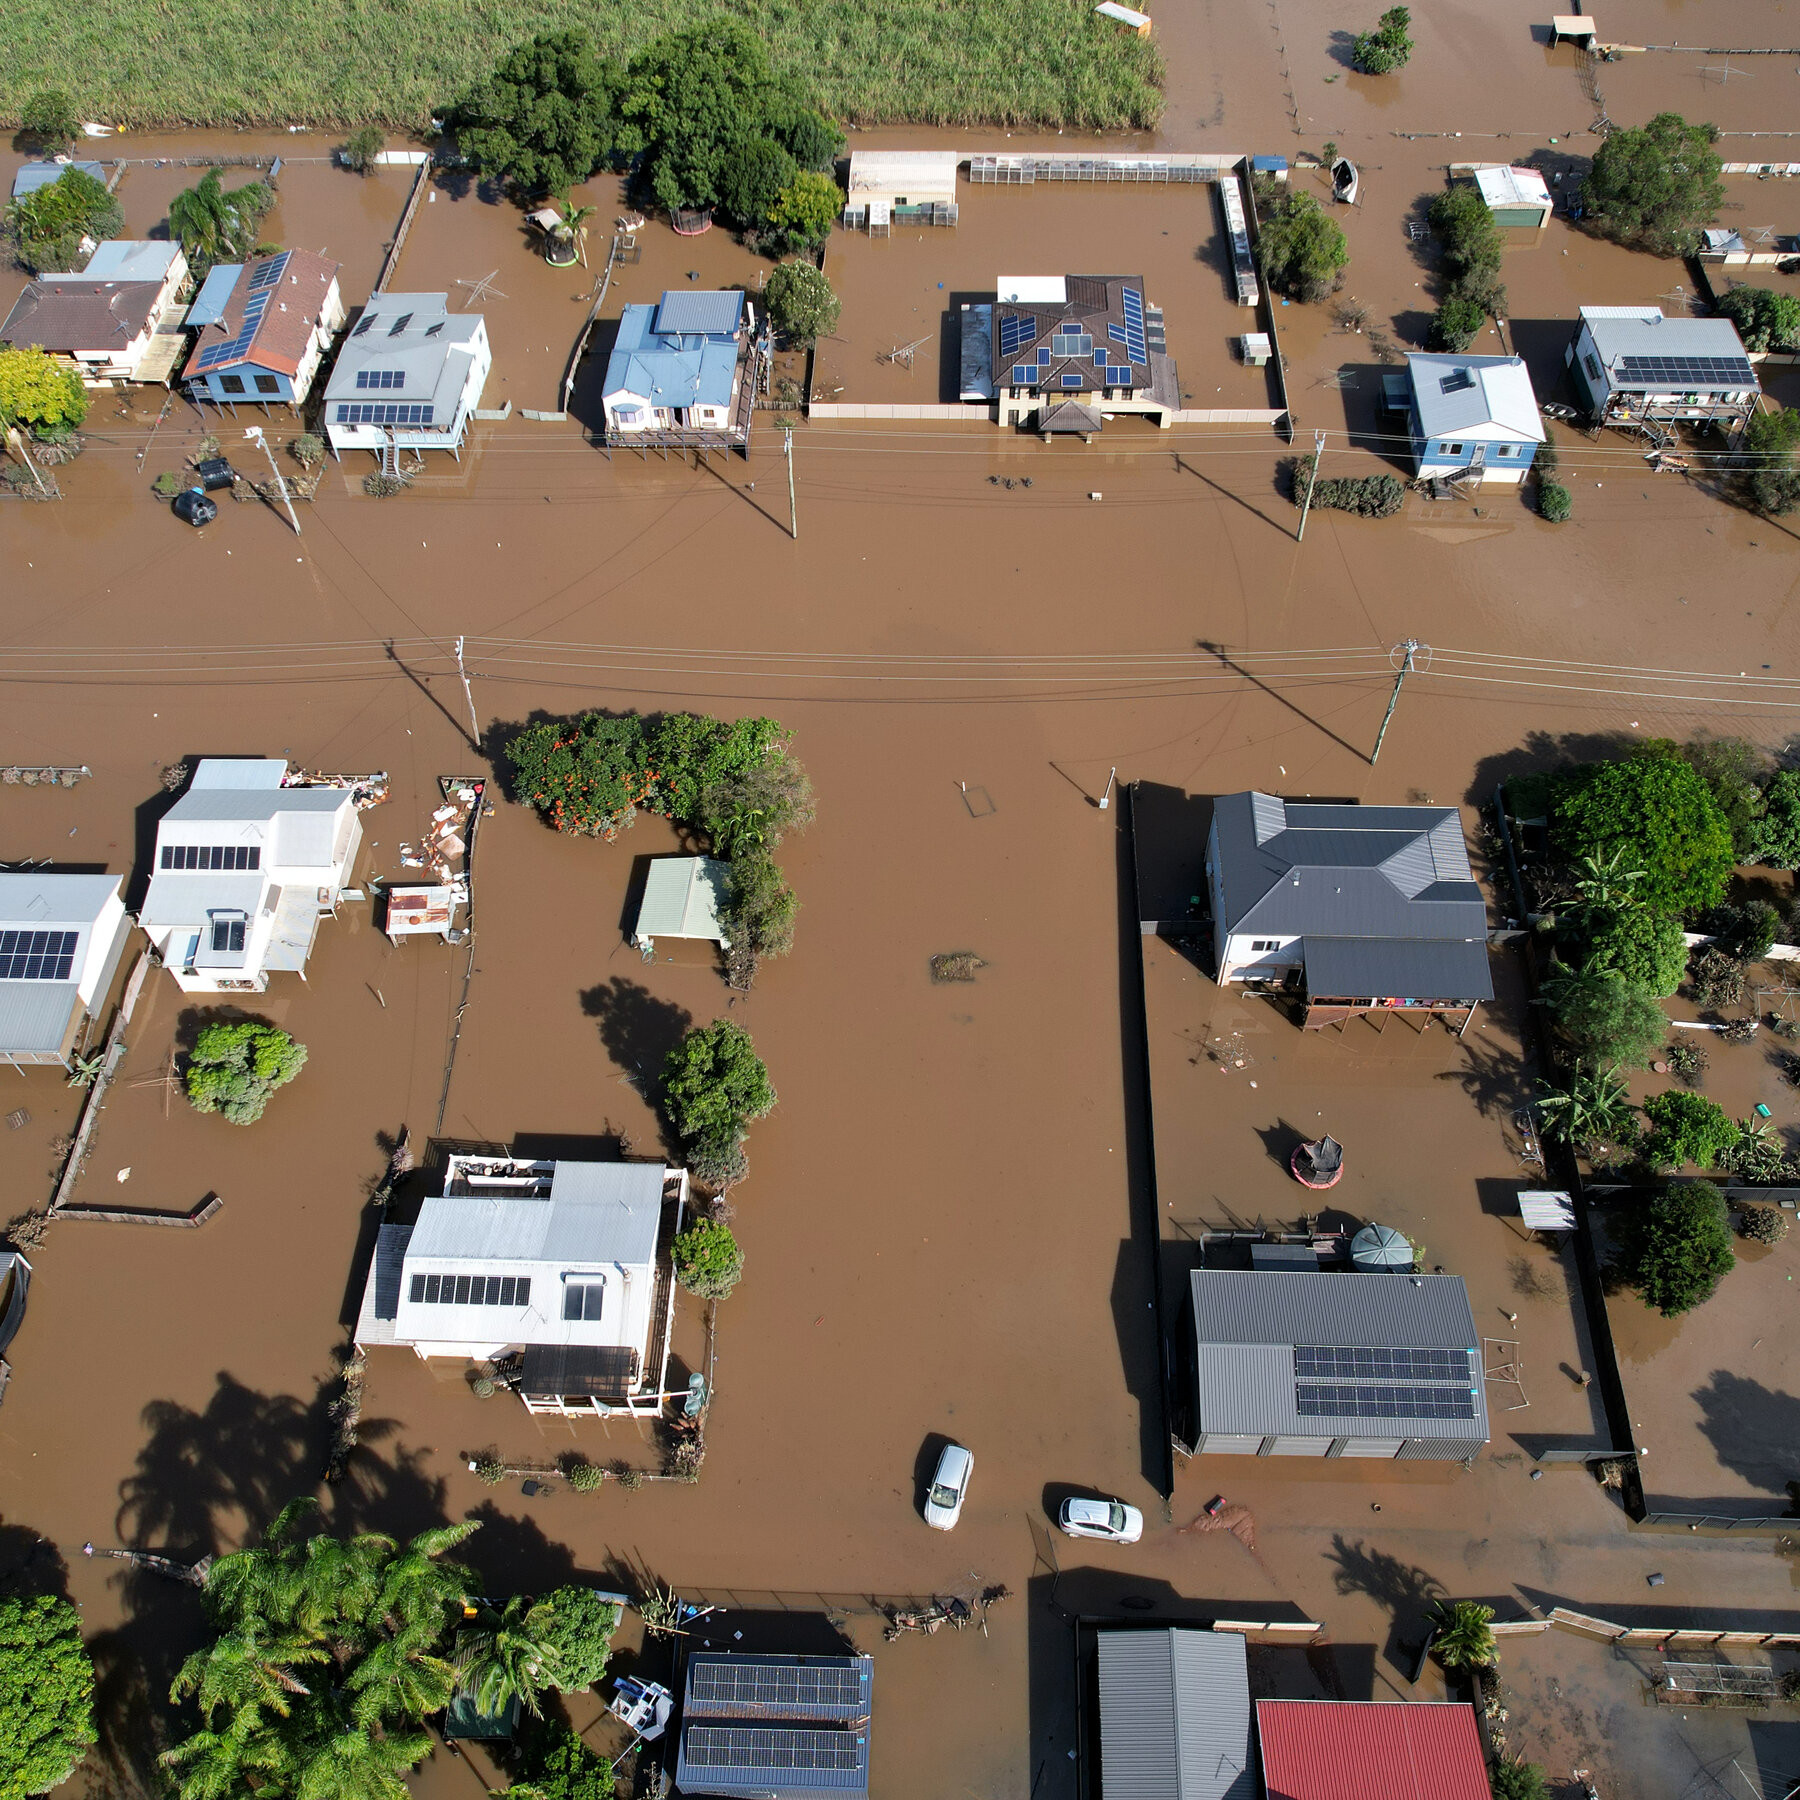 Quang cảnh những ngôi nhà bị ngập trong nước lũ ở Woodburn, New South Wales, Australia. Ảnh: NY Times.